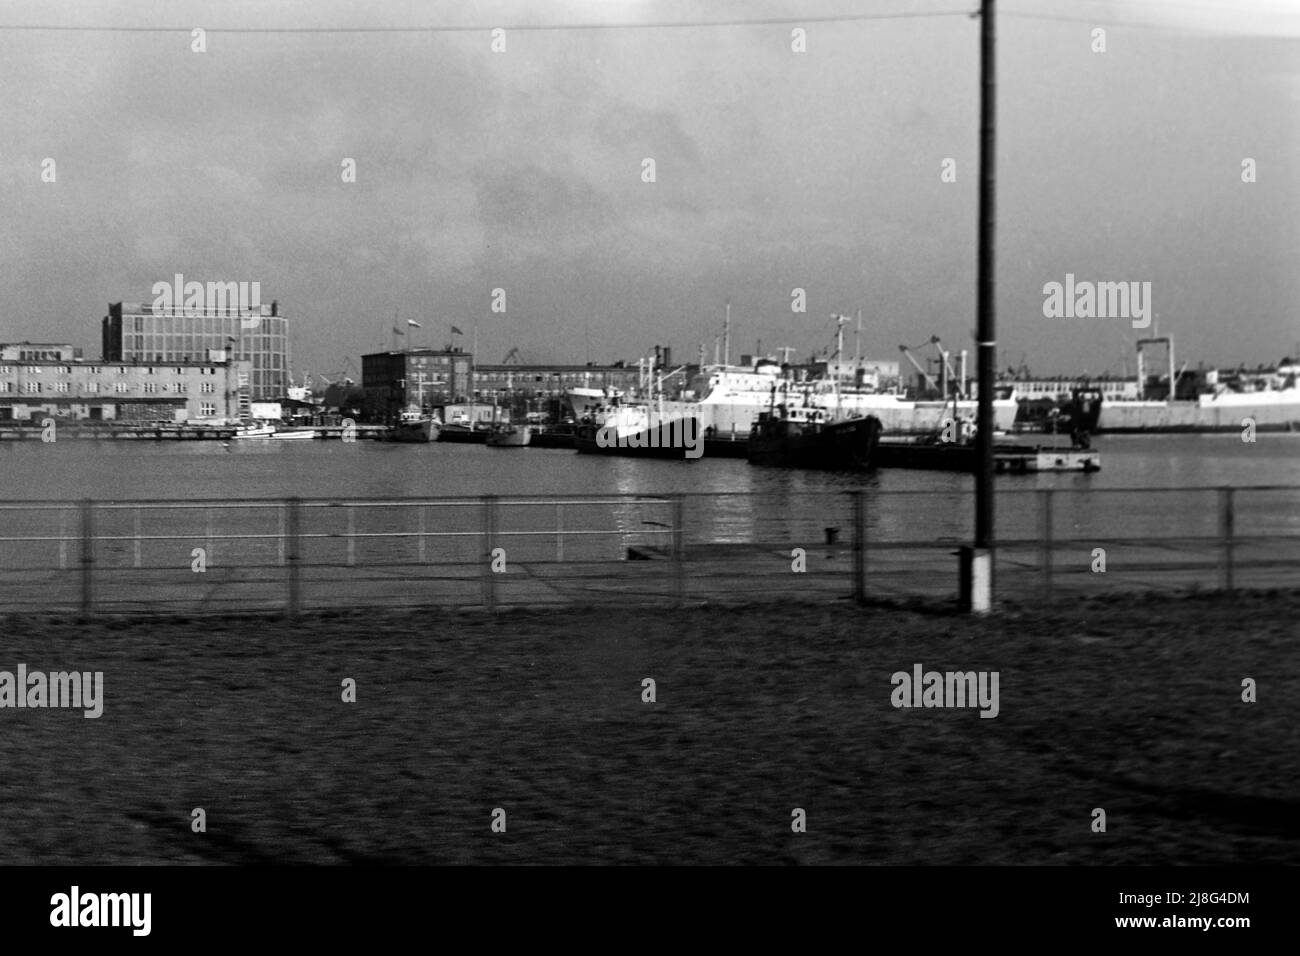 Der Gdinger Hafen, Woiwodschaft Pommern, 1967. Gdynia Seaport, Woiwodschaft Pommern, 1967. Stockfoto